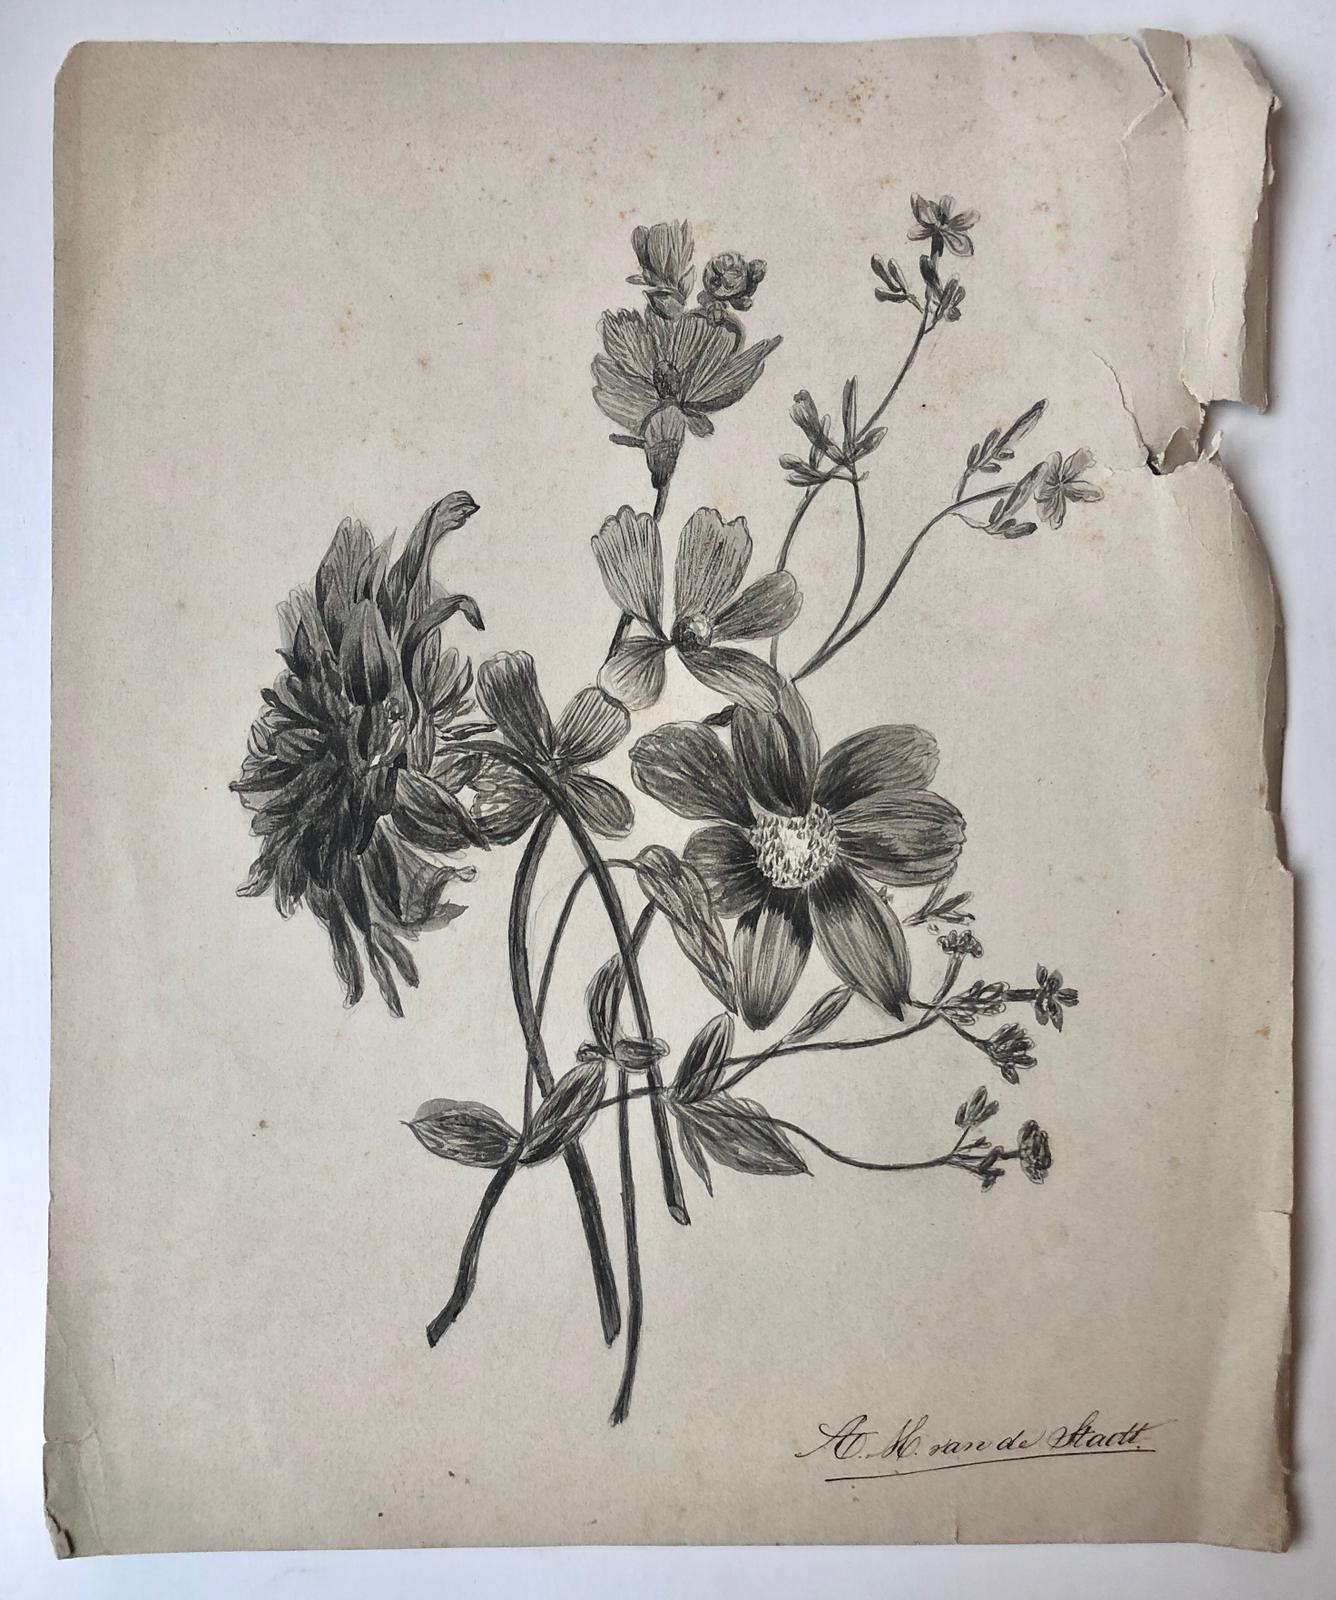  - [DRAWING, STADT, VAN DE] Potloodtekening (bloemen) door A.H. van de Stadt, 19de-eeuws, 30x25 cm.